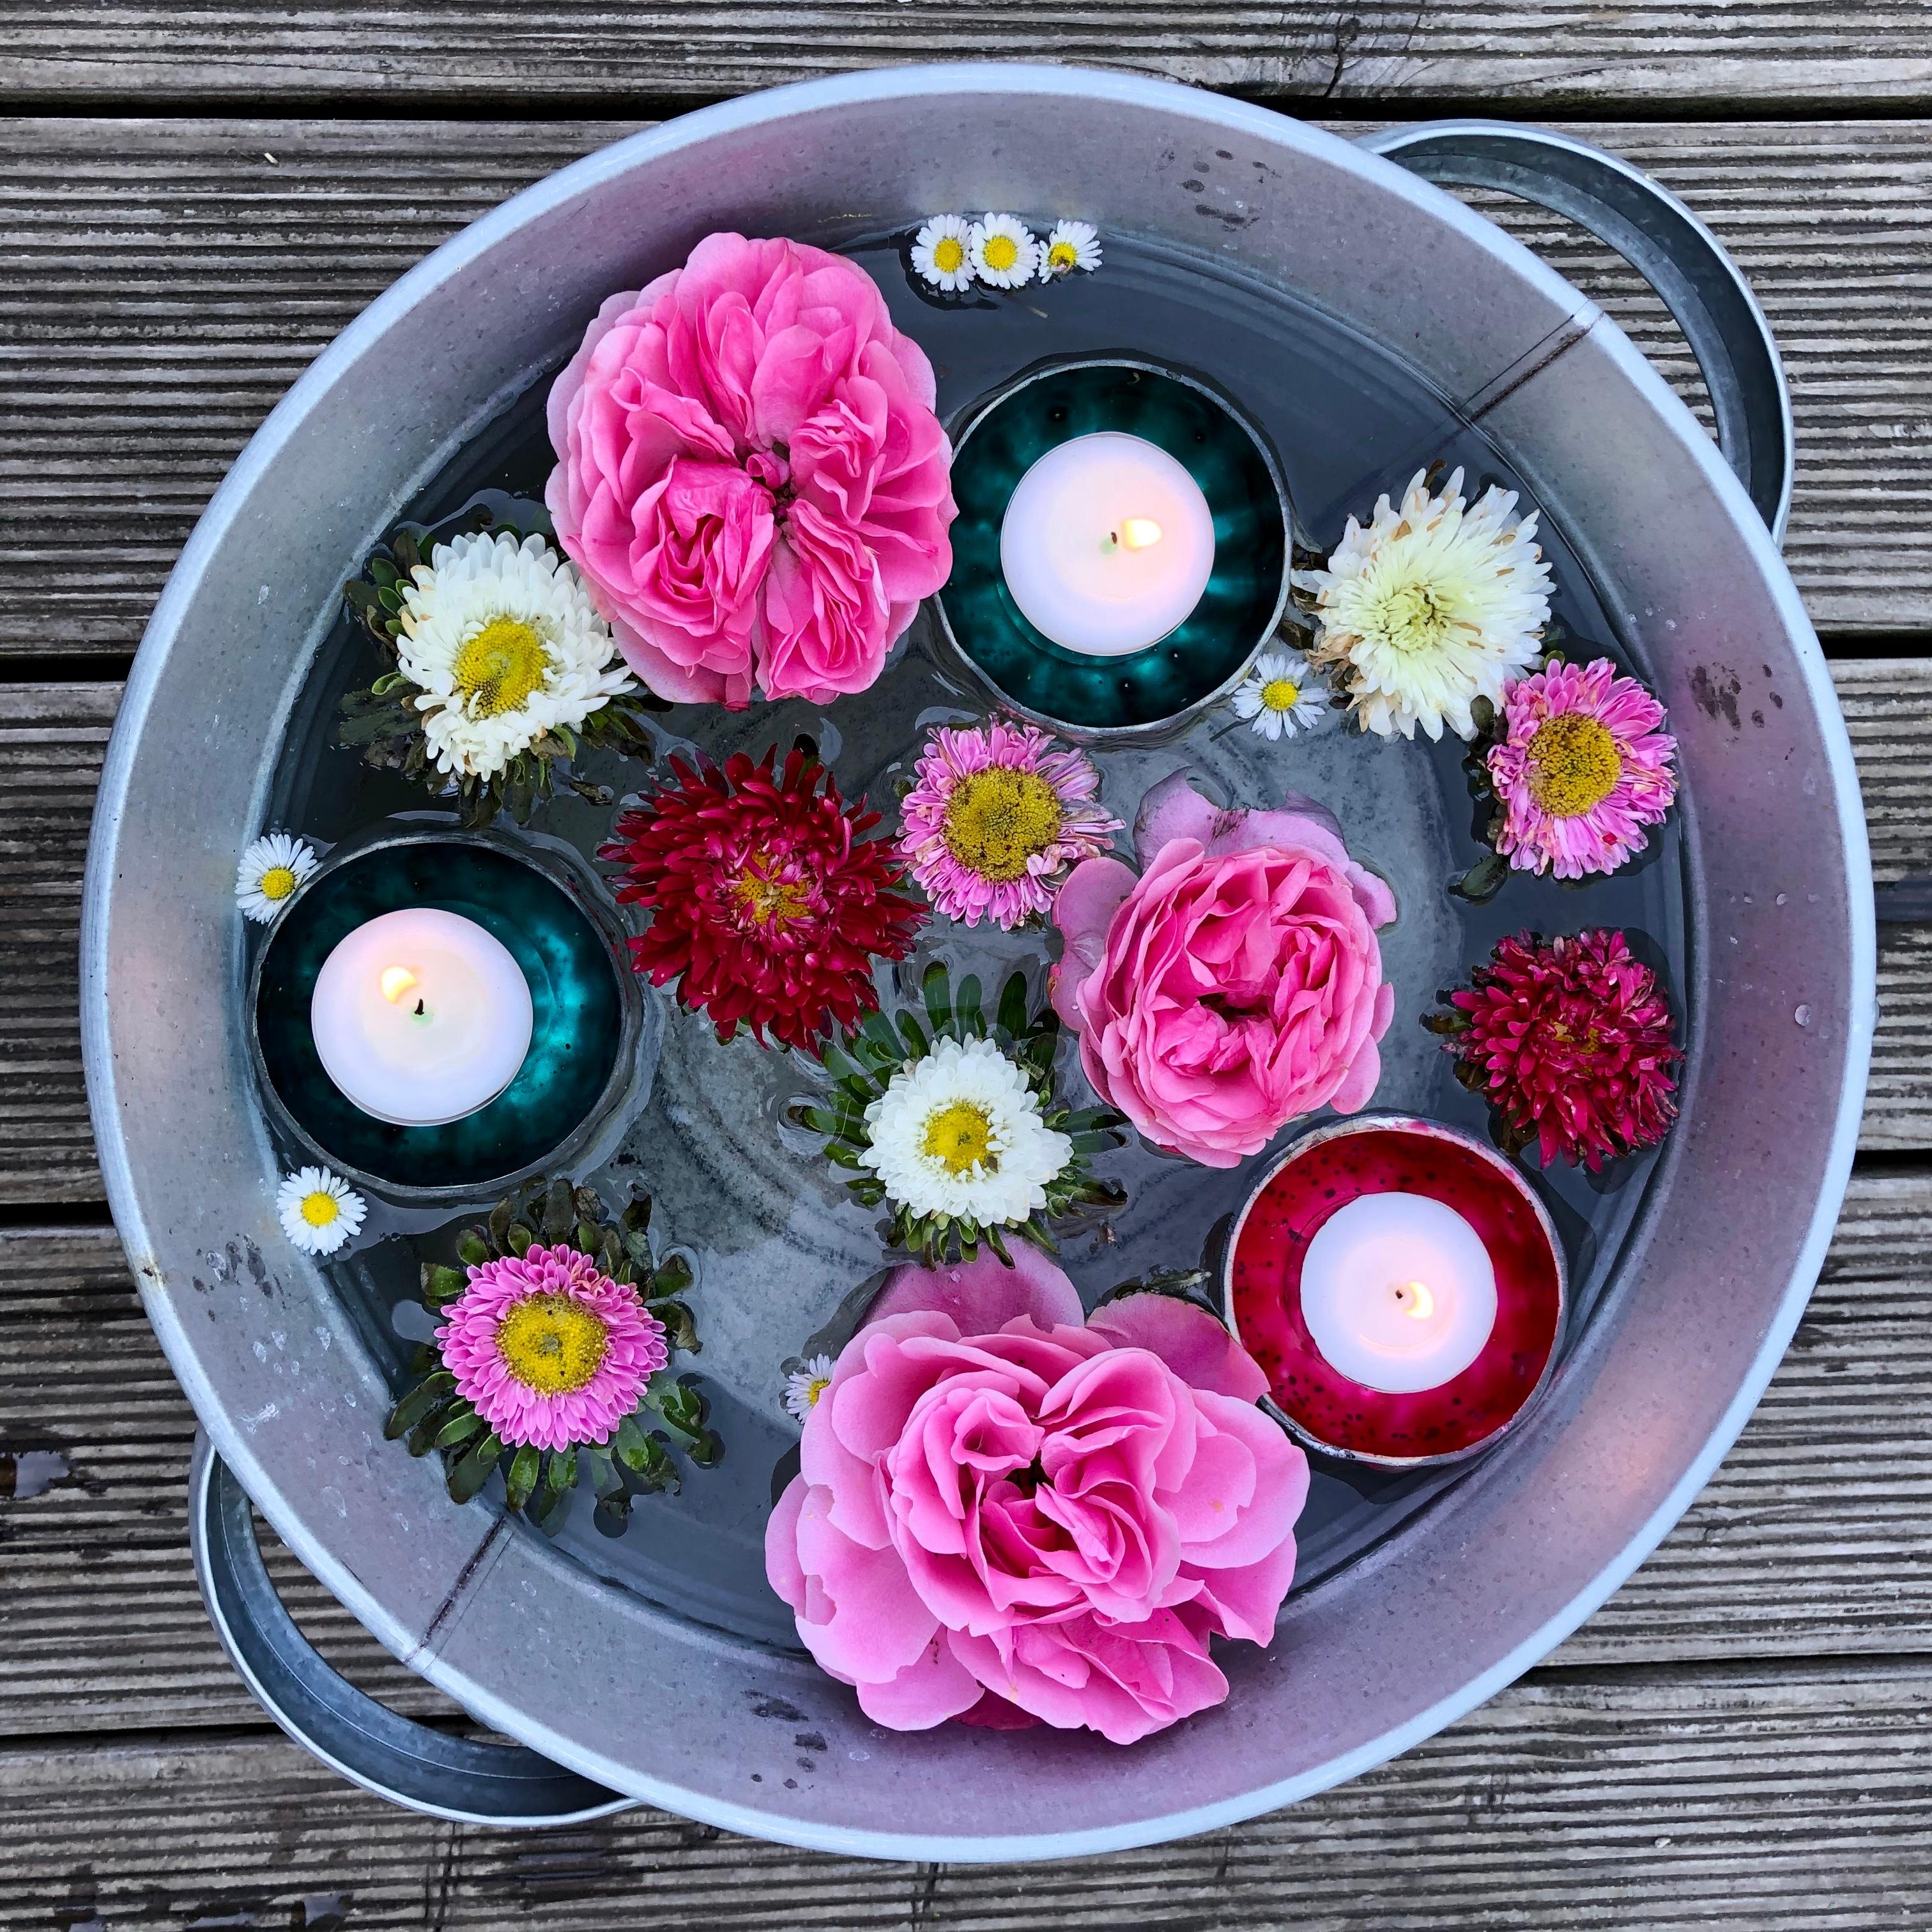 Schönen Sonntag!
#blumenliebe und Kerzenschein in der #zinkwanne 

#rosen #astern #gänseblümchen #kerzen #gartenglück